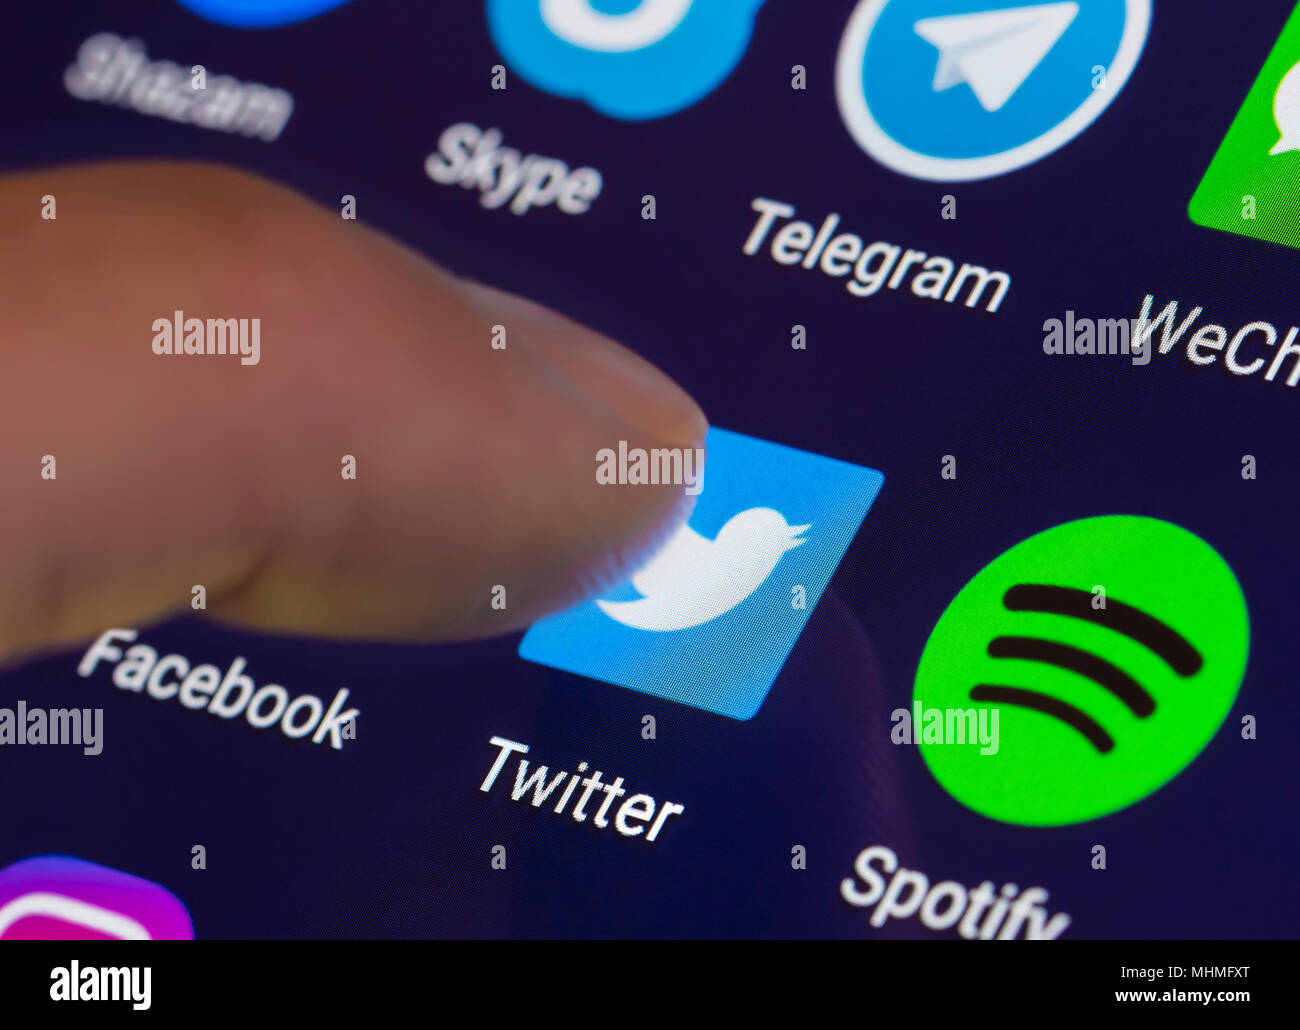 Appuyez sur l'icône Finder Twitter sur un smartphone ou tablette pour exécuter l'application Twitter. Banque D'Images